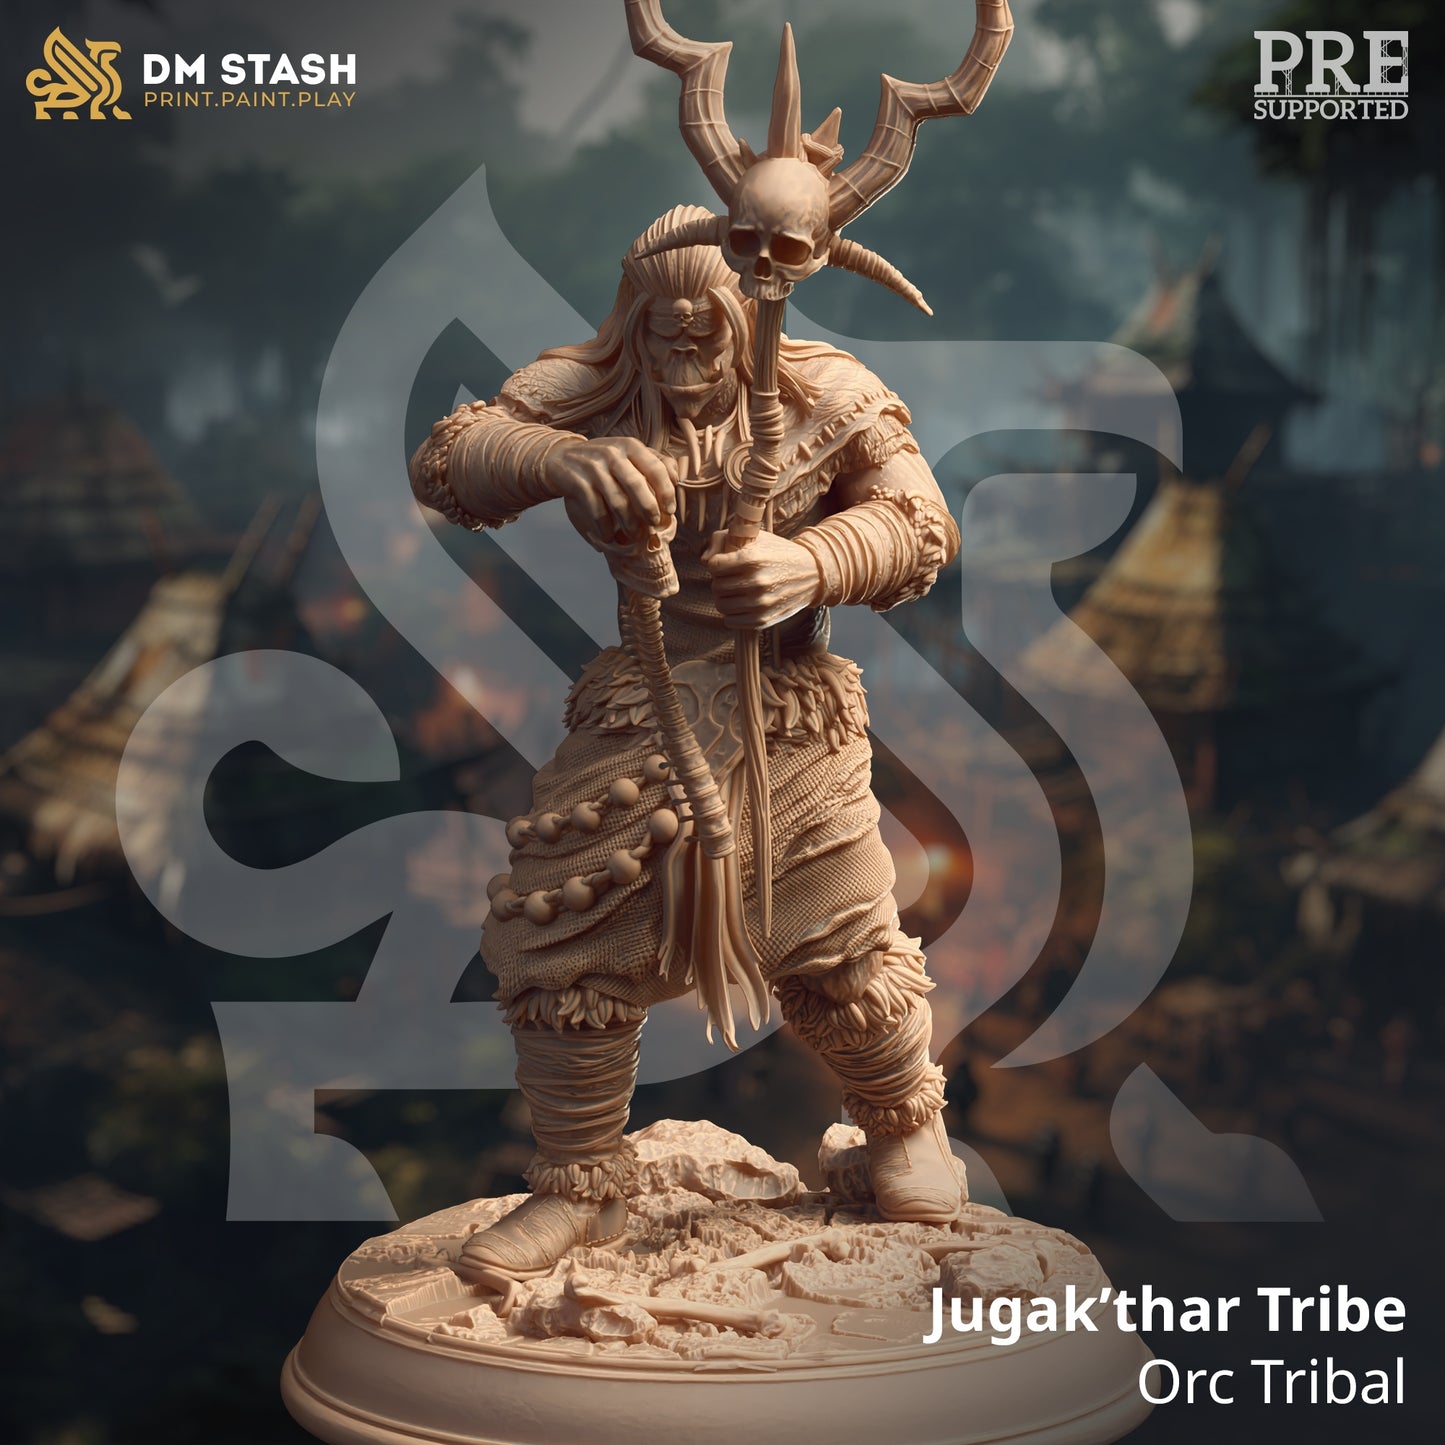 DM STASH - JUGAK’THAR TRIBE - TRIBAL ORC 32MM